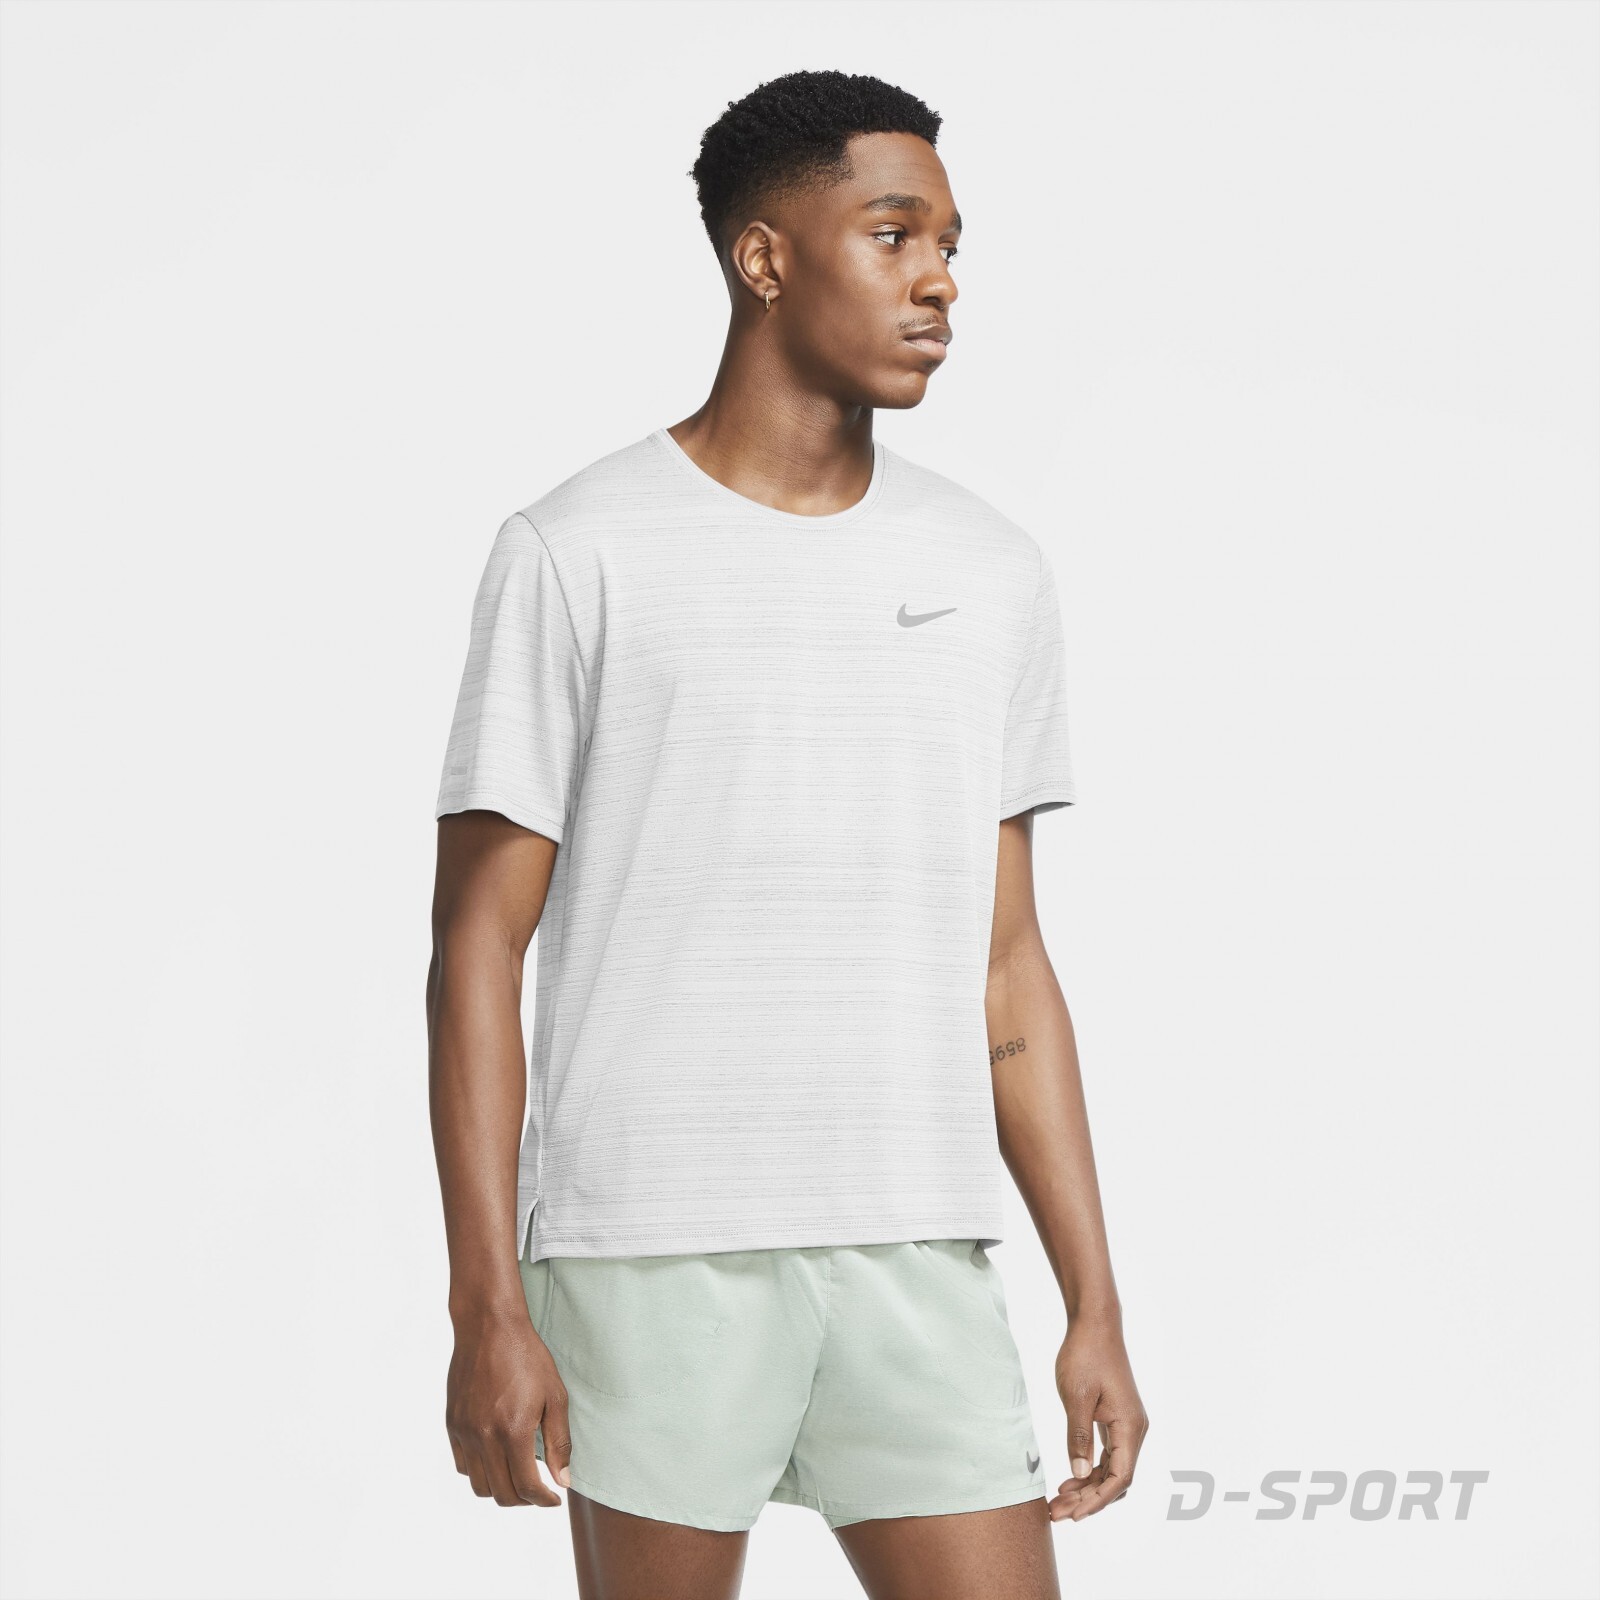 Nike Dri-FIT Miler-Men's Running Top